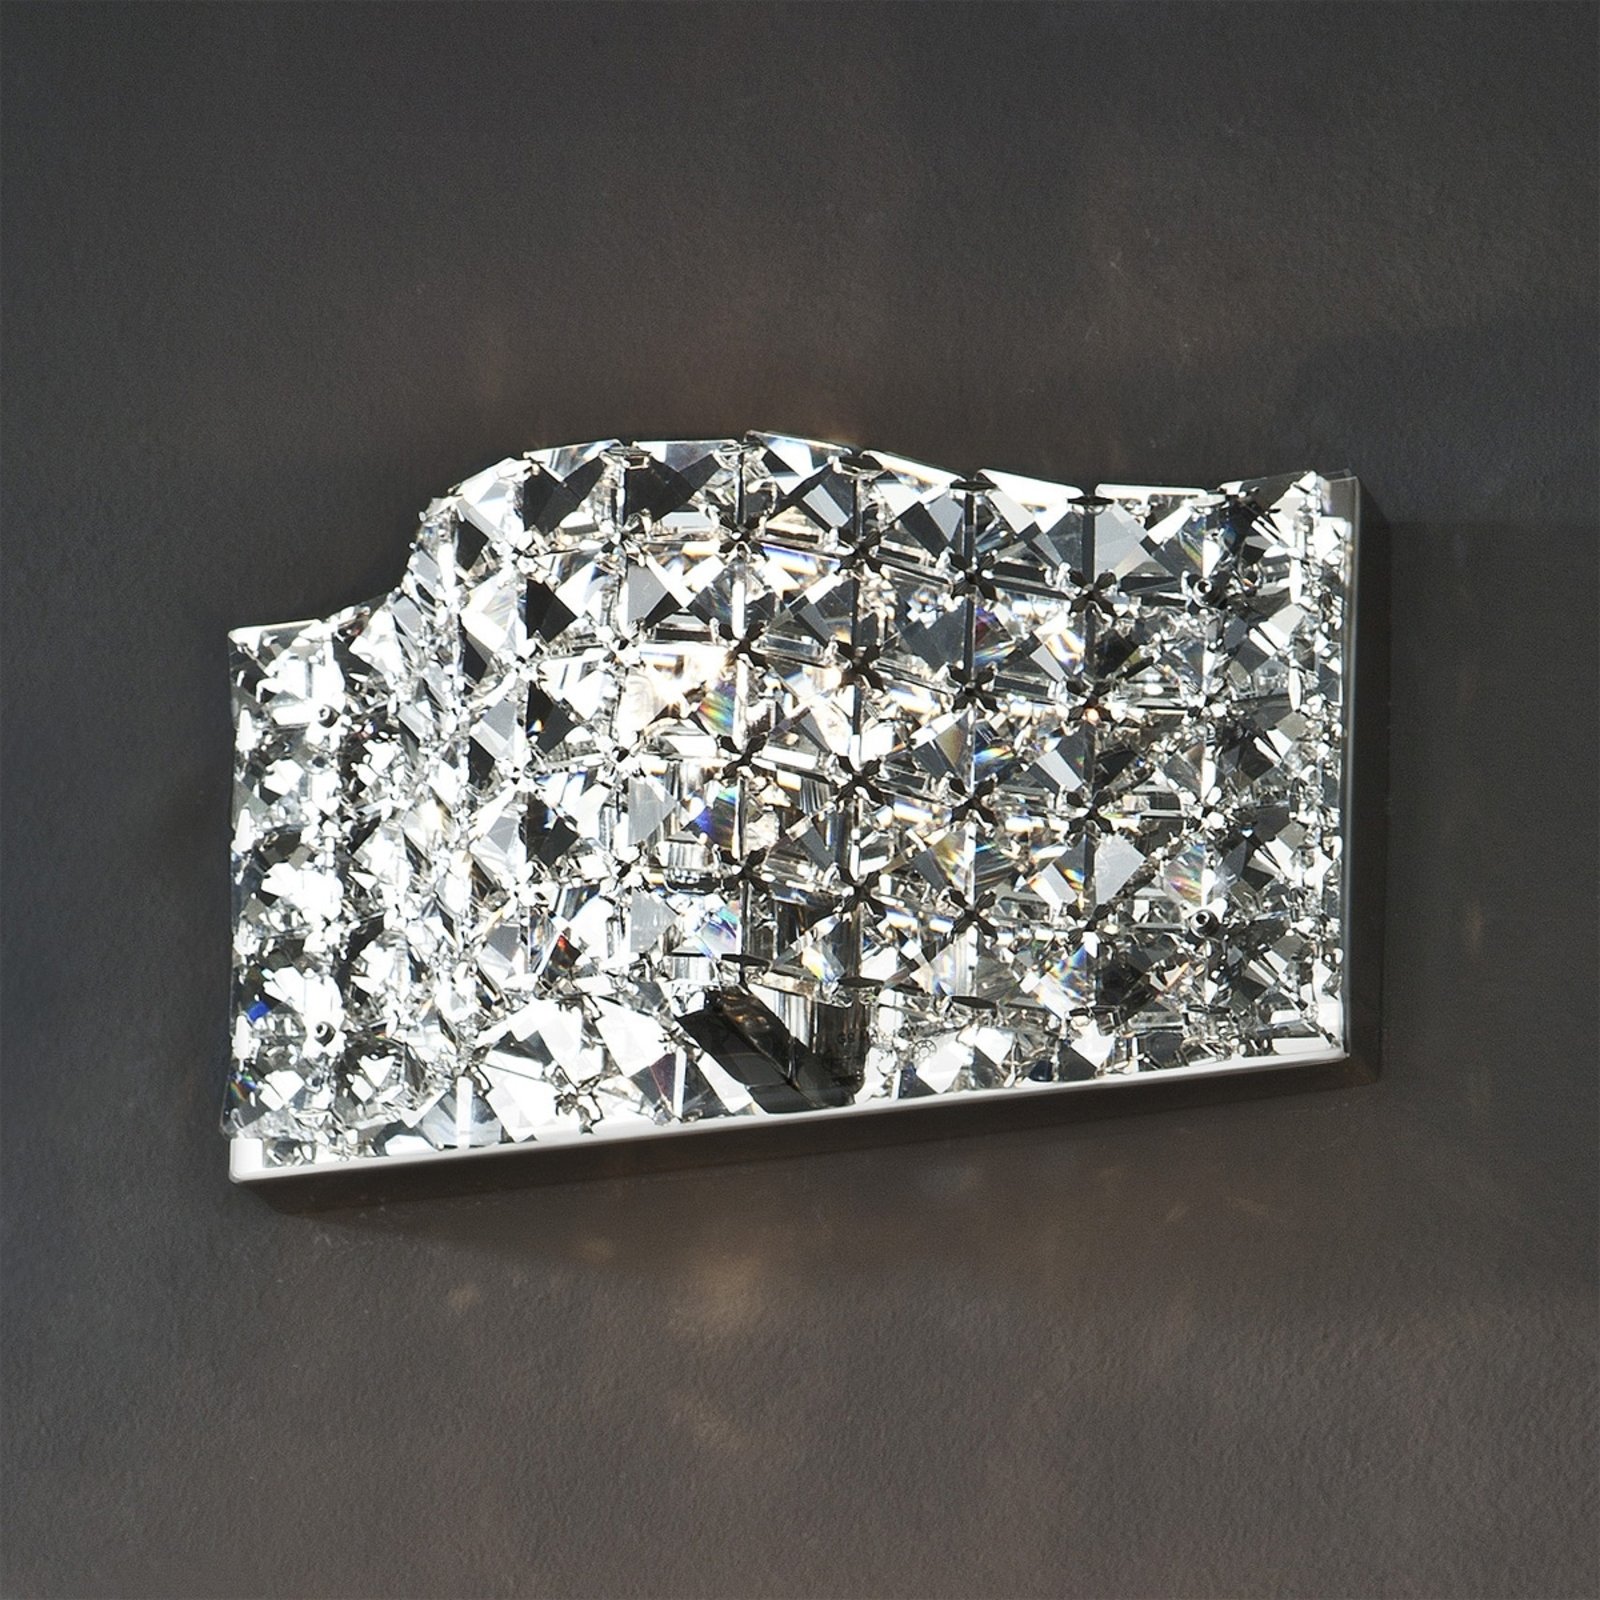 Fali lámpa kristály, 25 cm